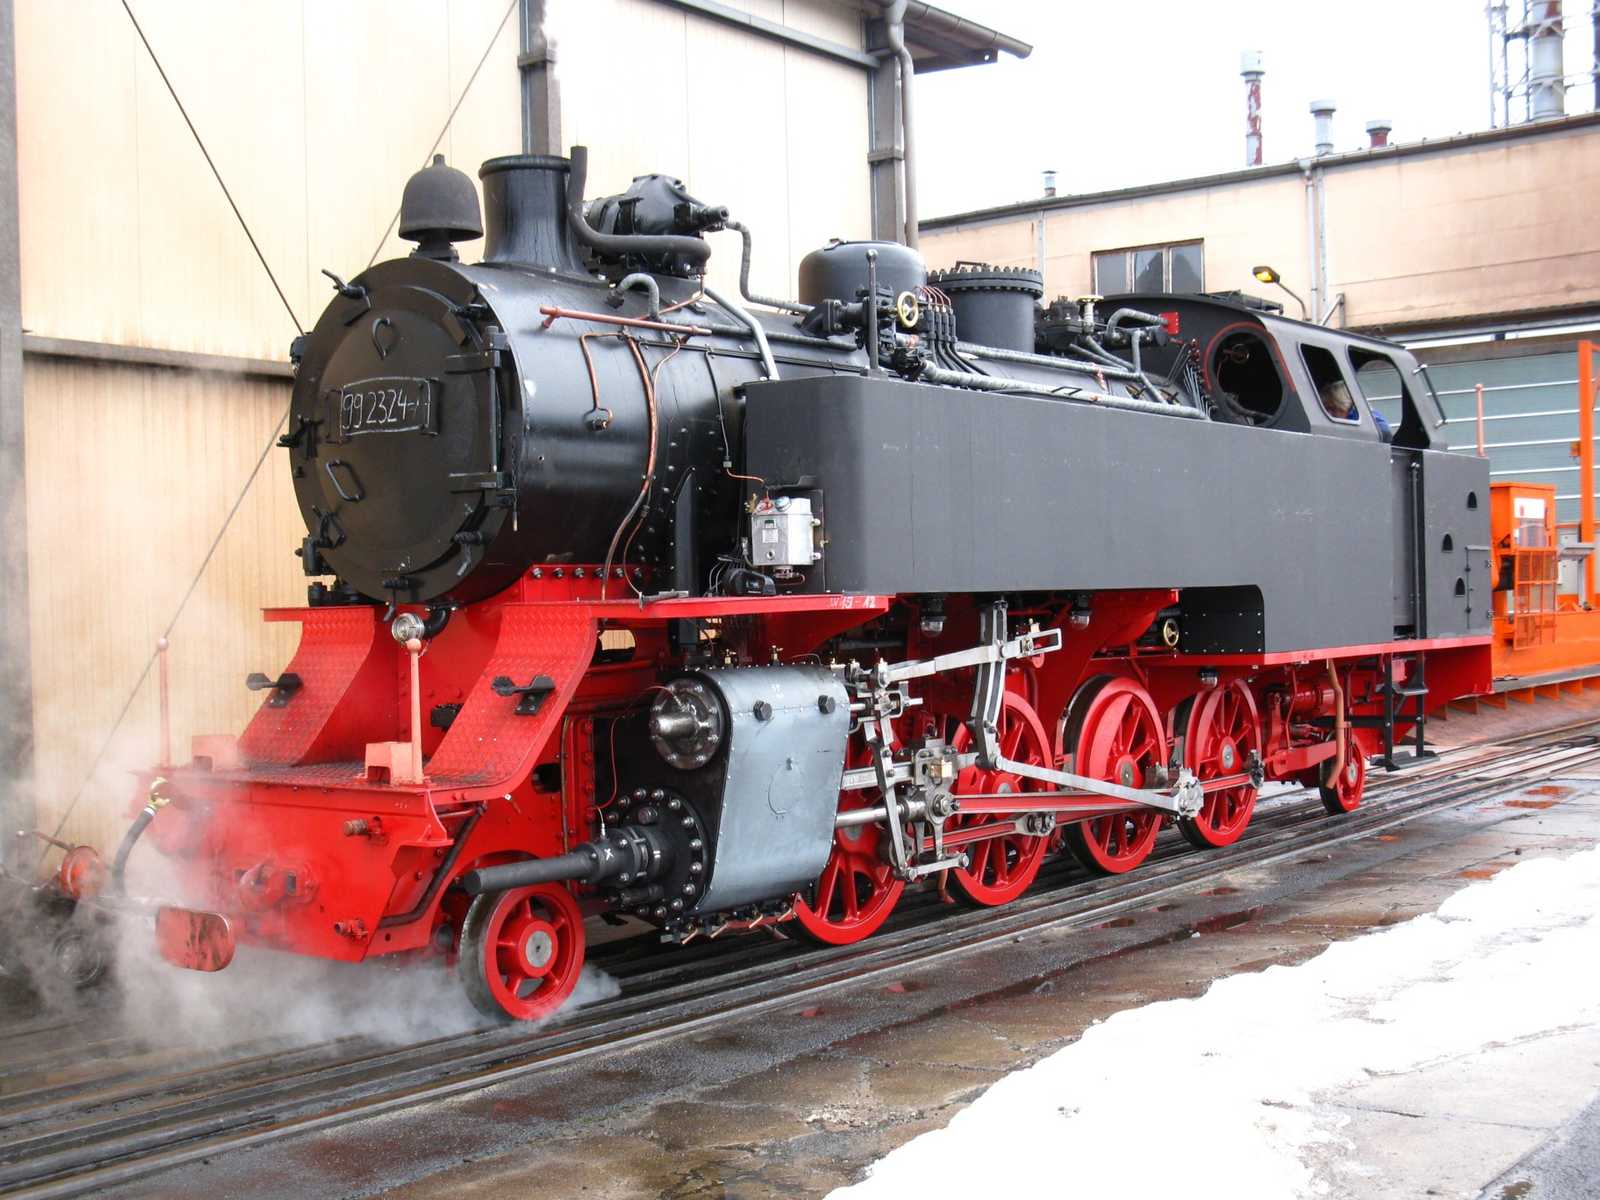 Am 15.1.2009 absolvierte die Nachbaulok 99 2324-4 ihre erste Probefahrt im Dampflokwerk Meiningen .